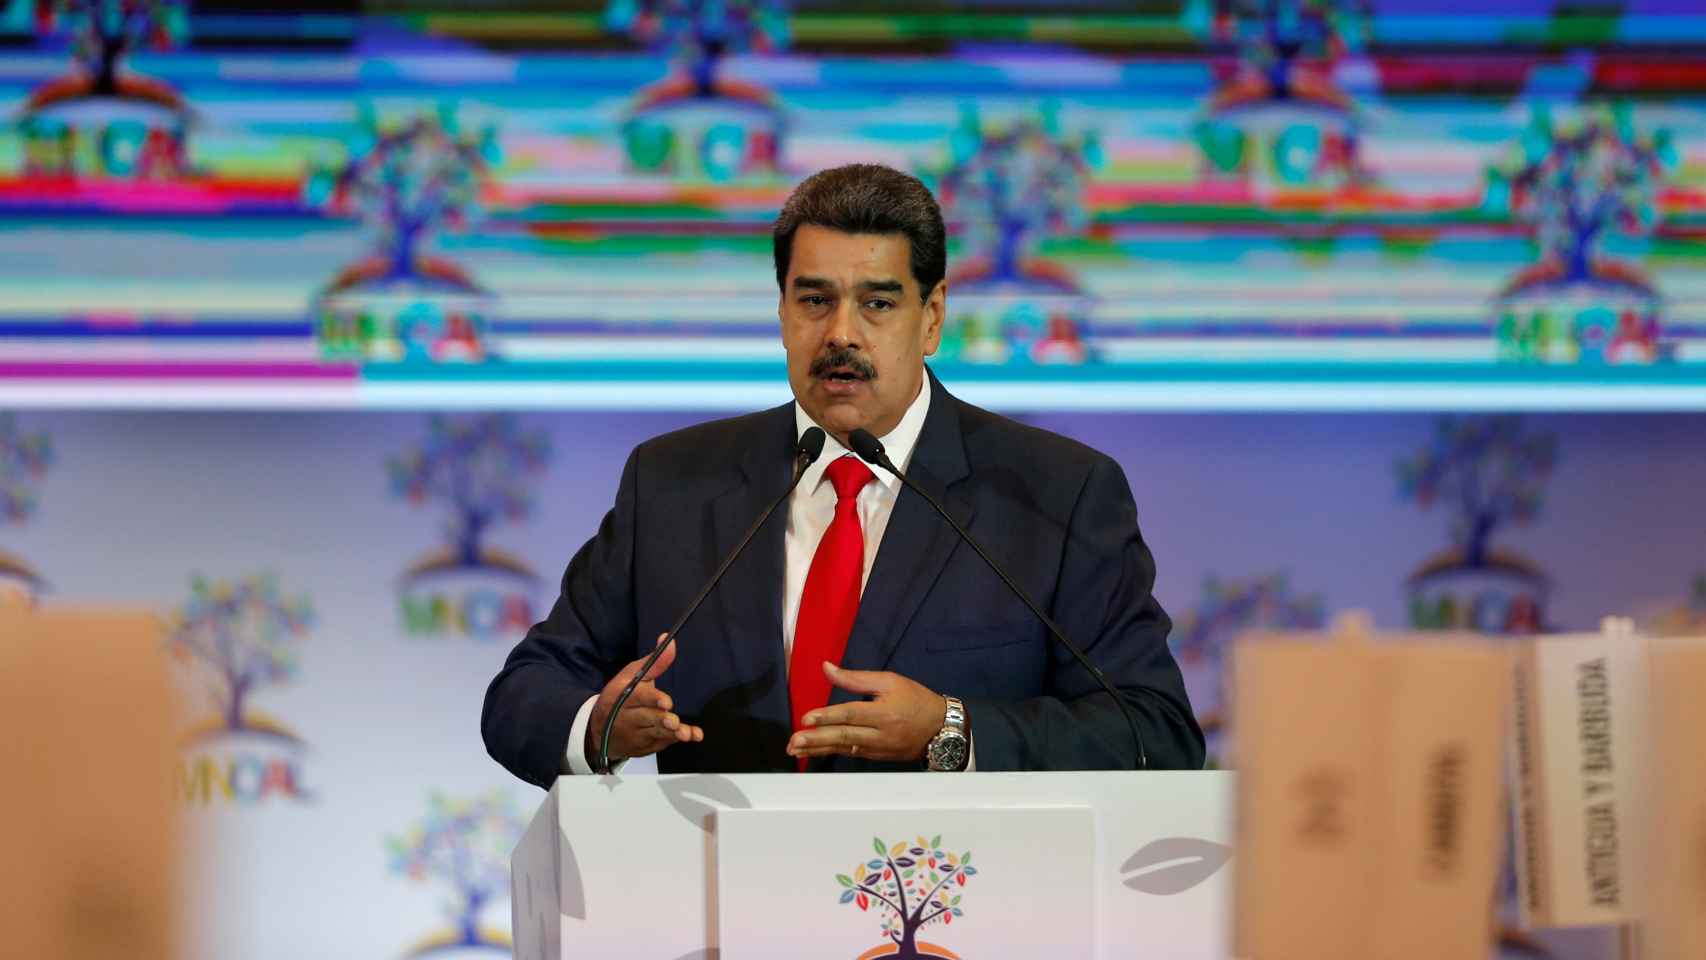 Nicolás Maduro en una imagen de archivo.